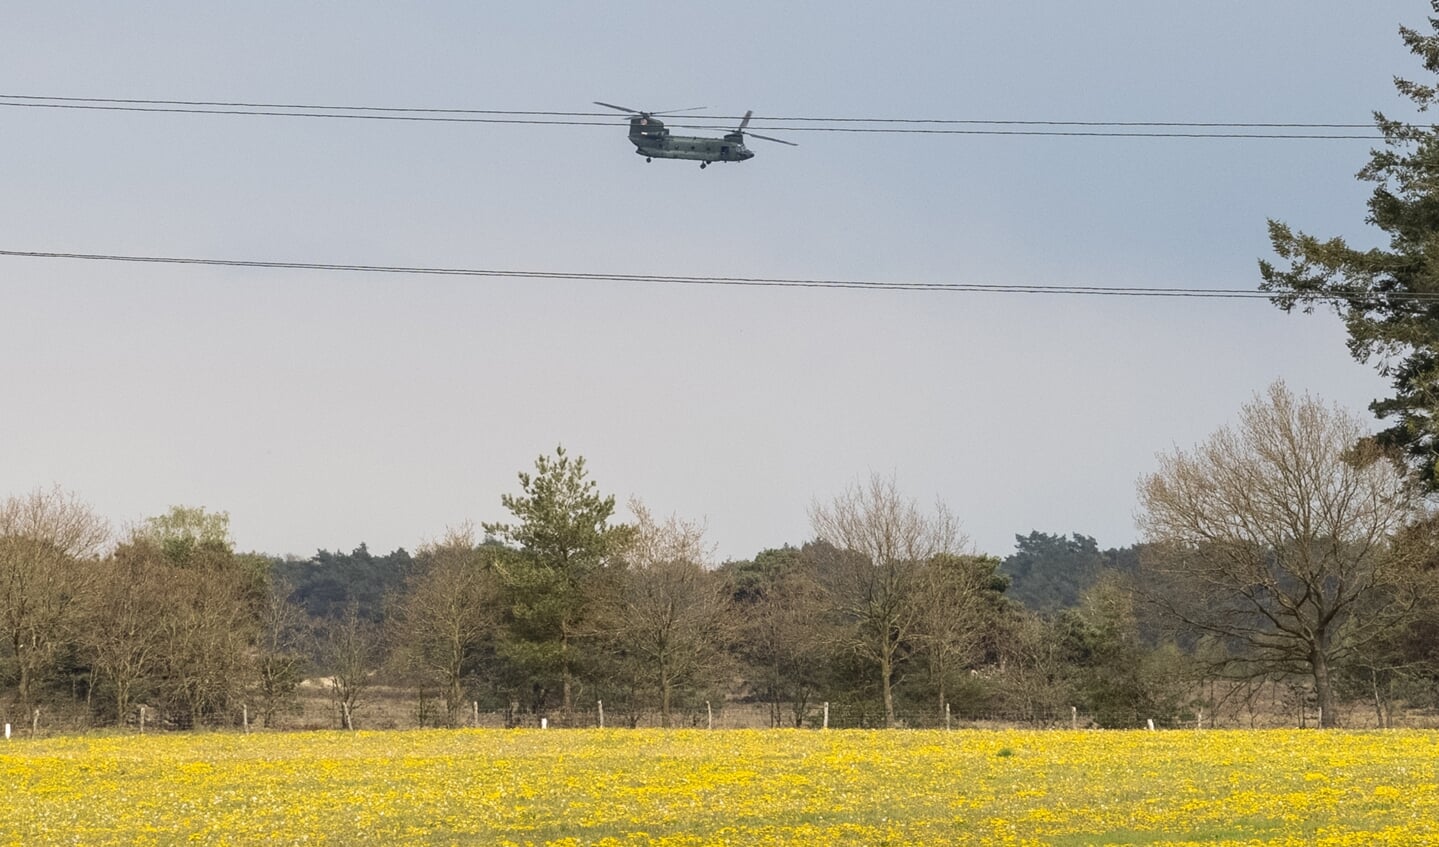 De bemanning van de gestrande helikopter werd door collega's opgehaald en teruggevlogen naar Gilze-Rijen